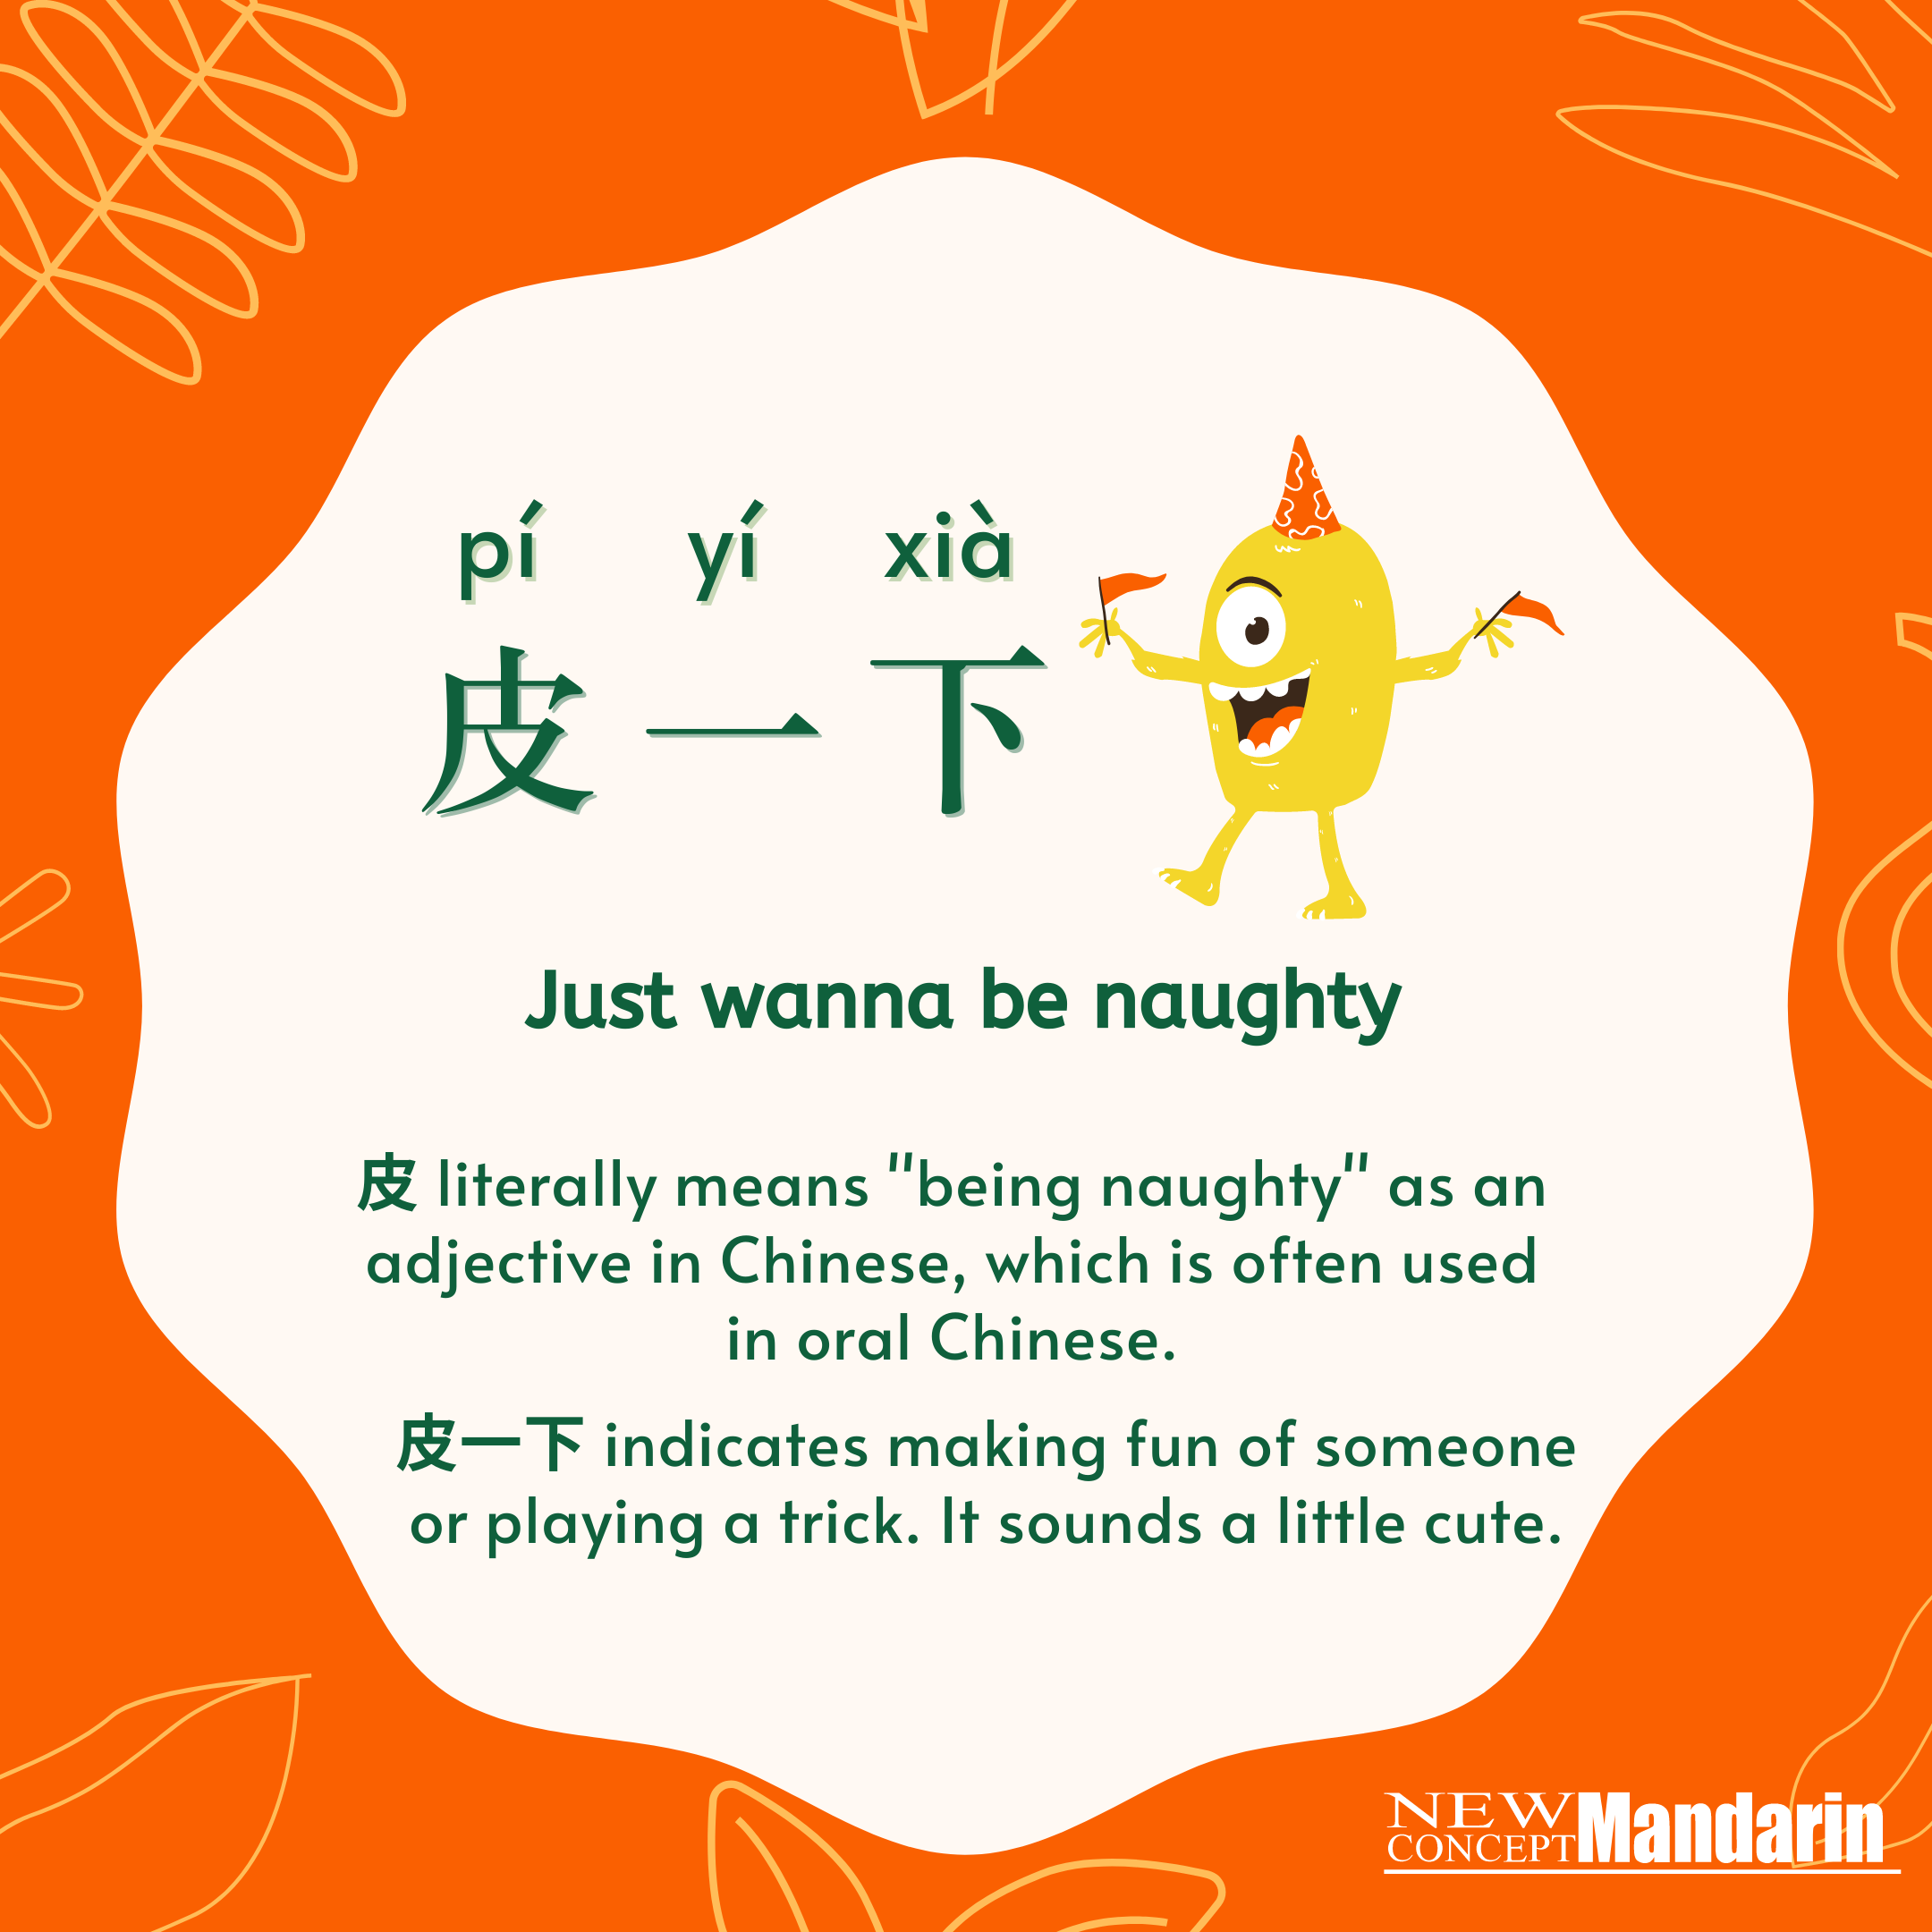 皮一下 (pí yī xià) just wanna be naughty: Literally speaking, 皮 means 